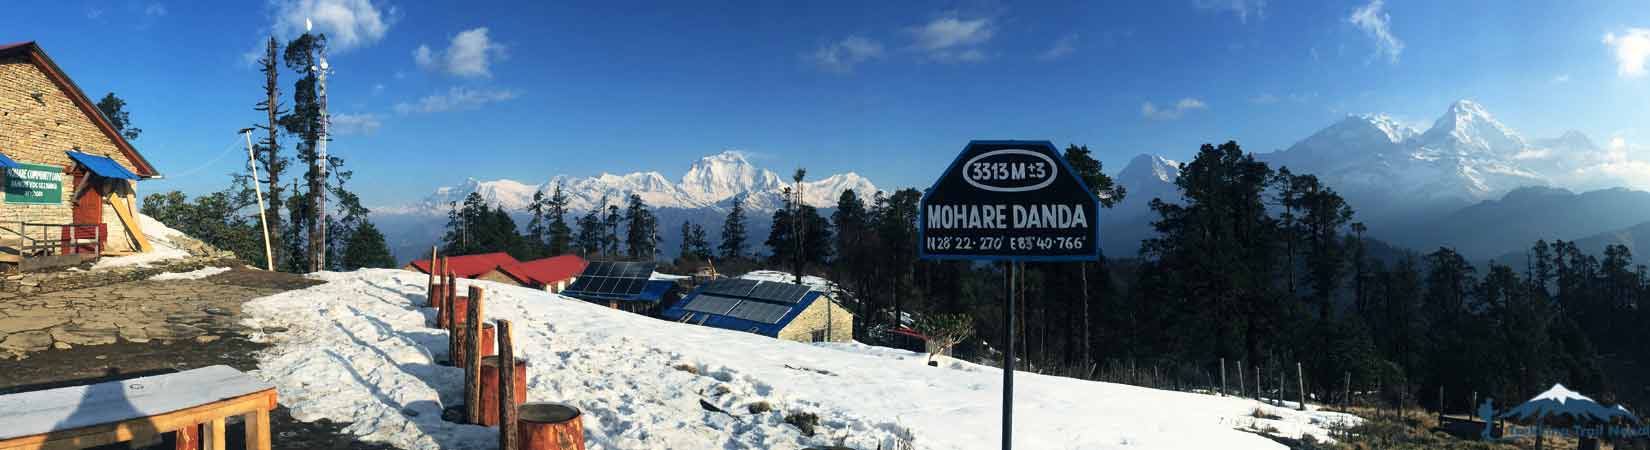 Mohare Danda Trek Himalayas Views